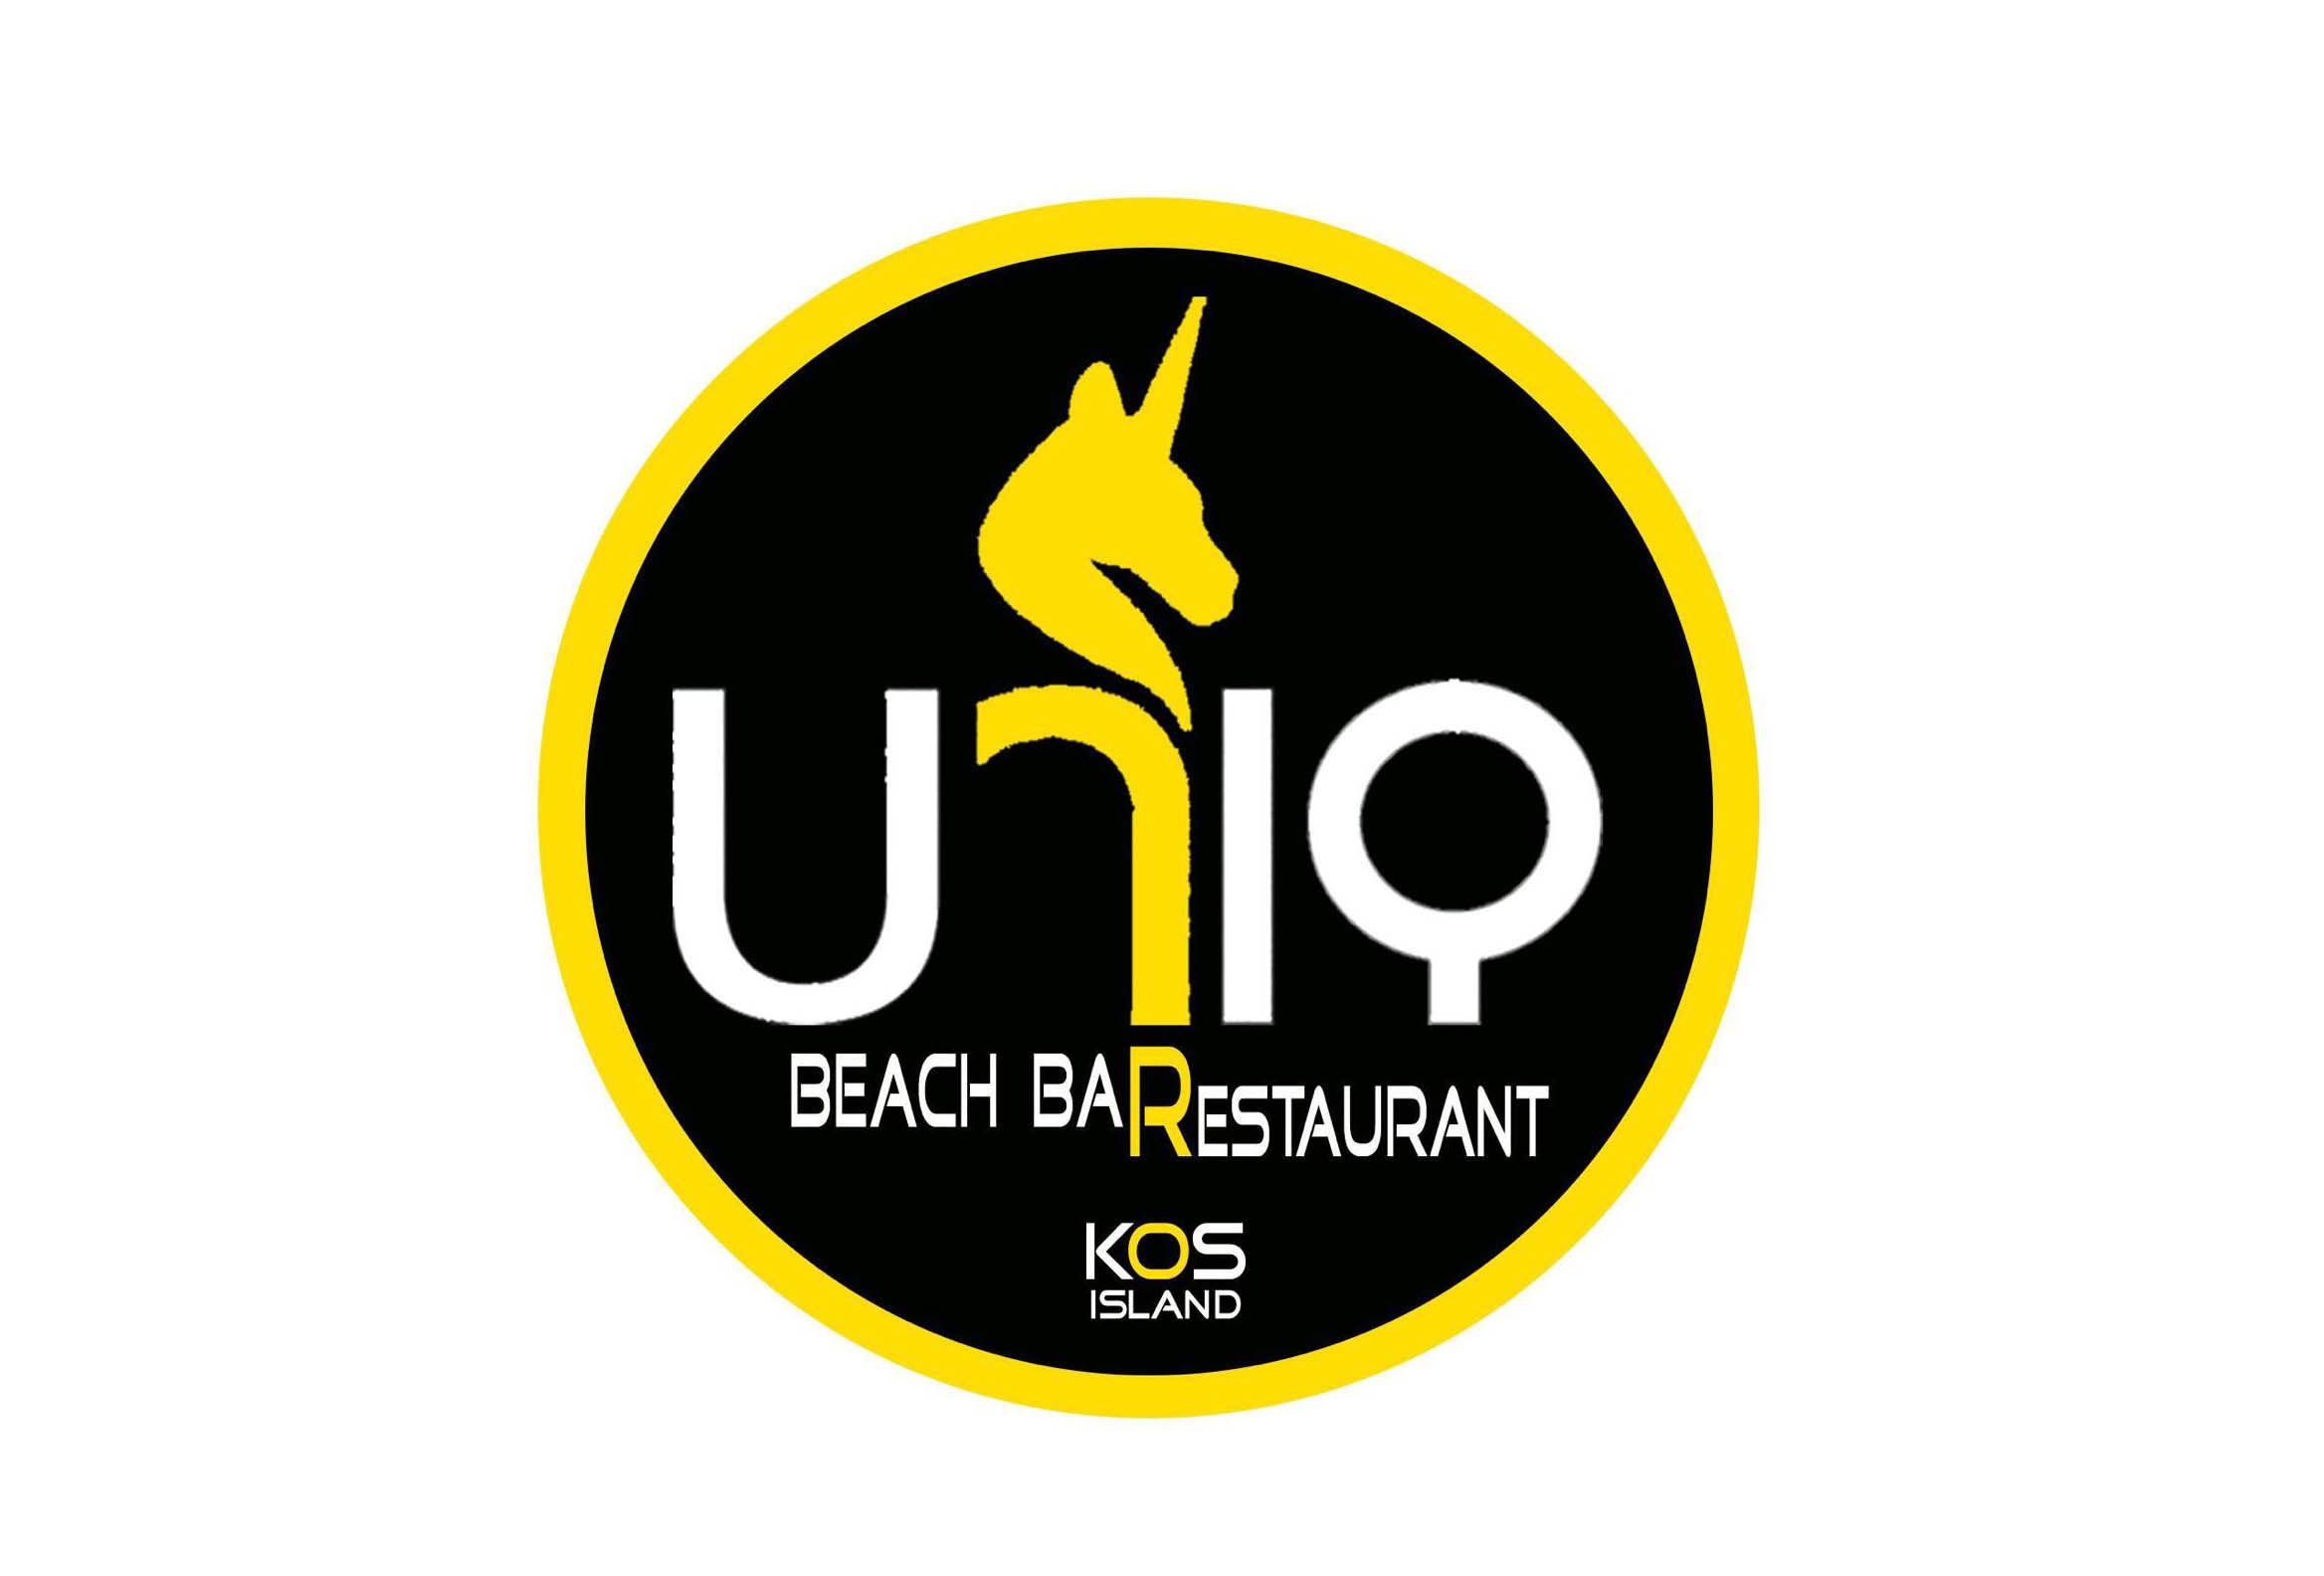 Zητείται πωλήτρια για τη μπουτίκ του "Uniq beach bar"